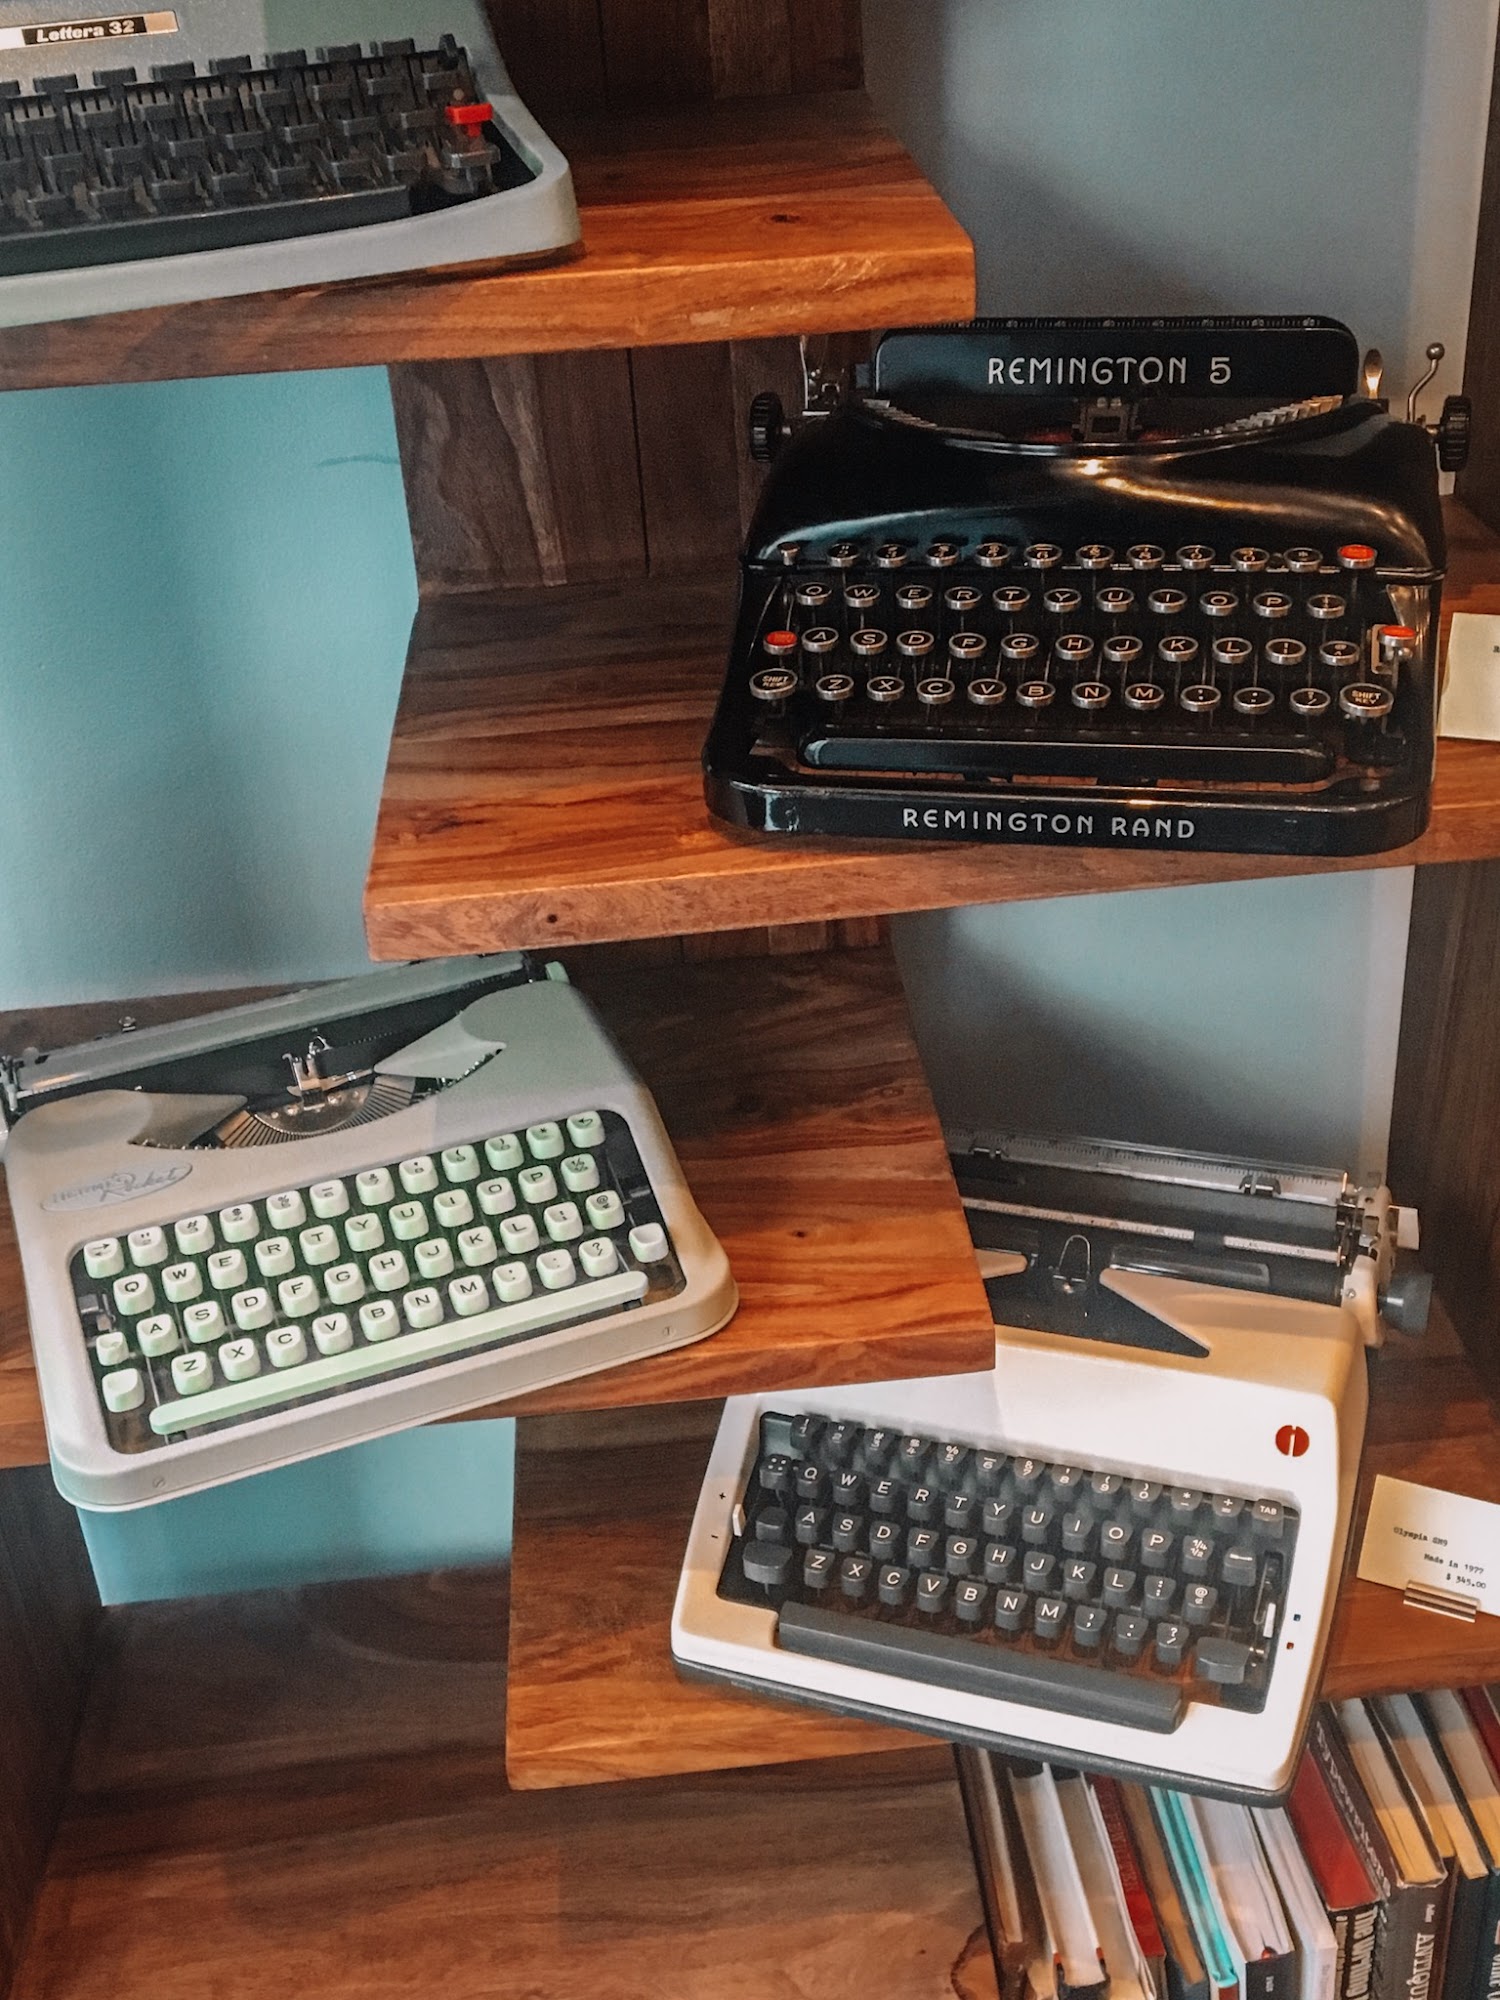 Gramercy Typewriter Company